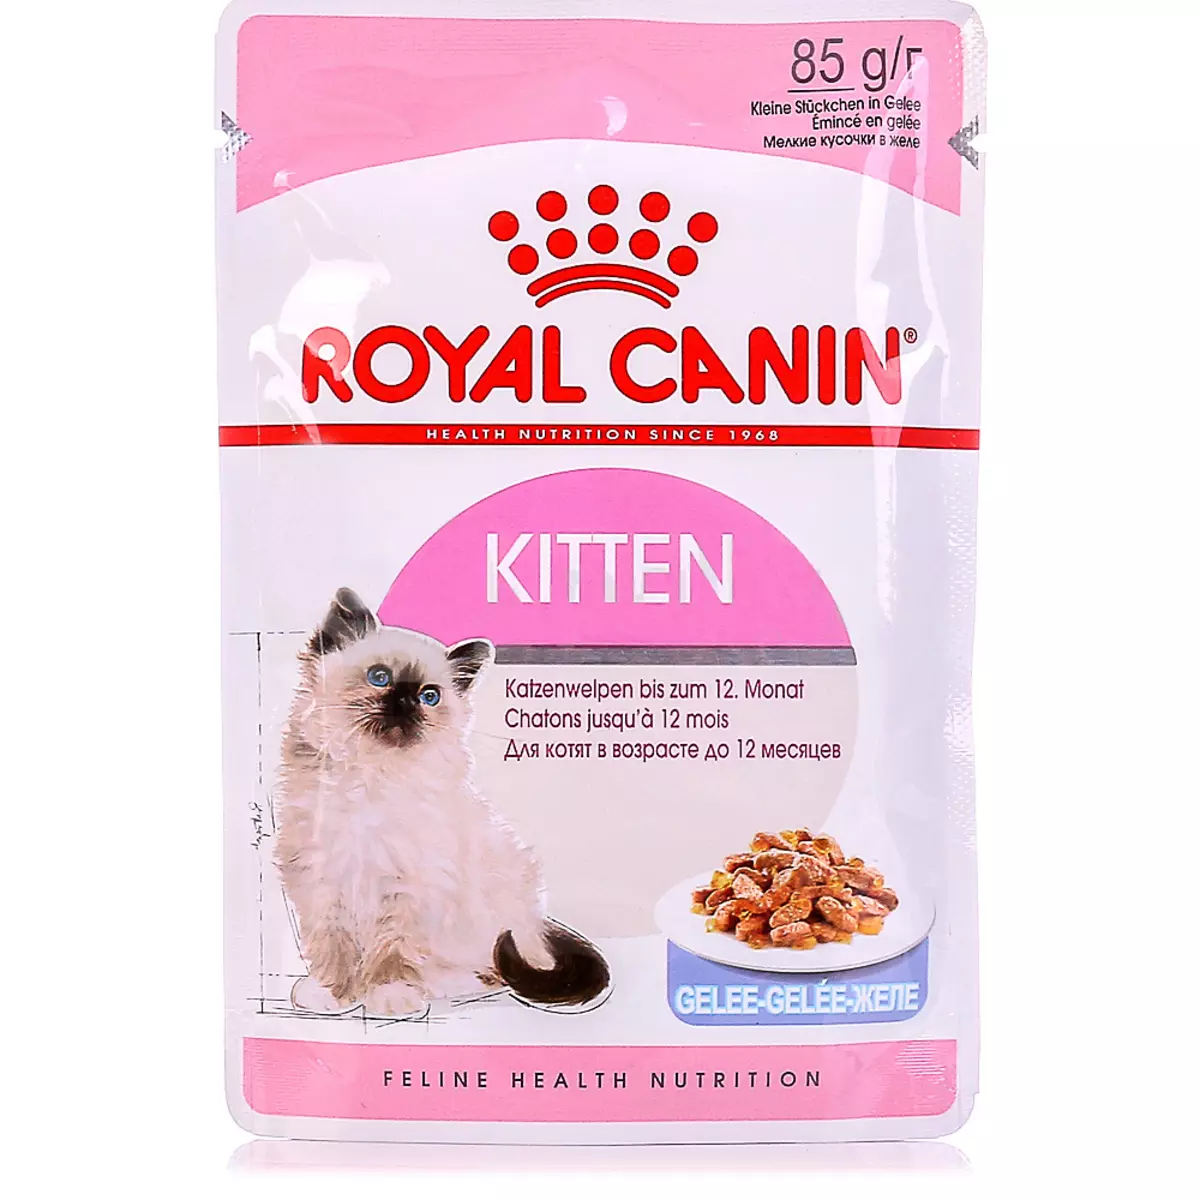 Droë kos vir katjies Royal Canin: Kitten Samestelling tot 12 maande, voer vir gesteriliseerde katjies. Sal dit hulle ruik? Dosis 22012_7